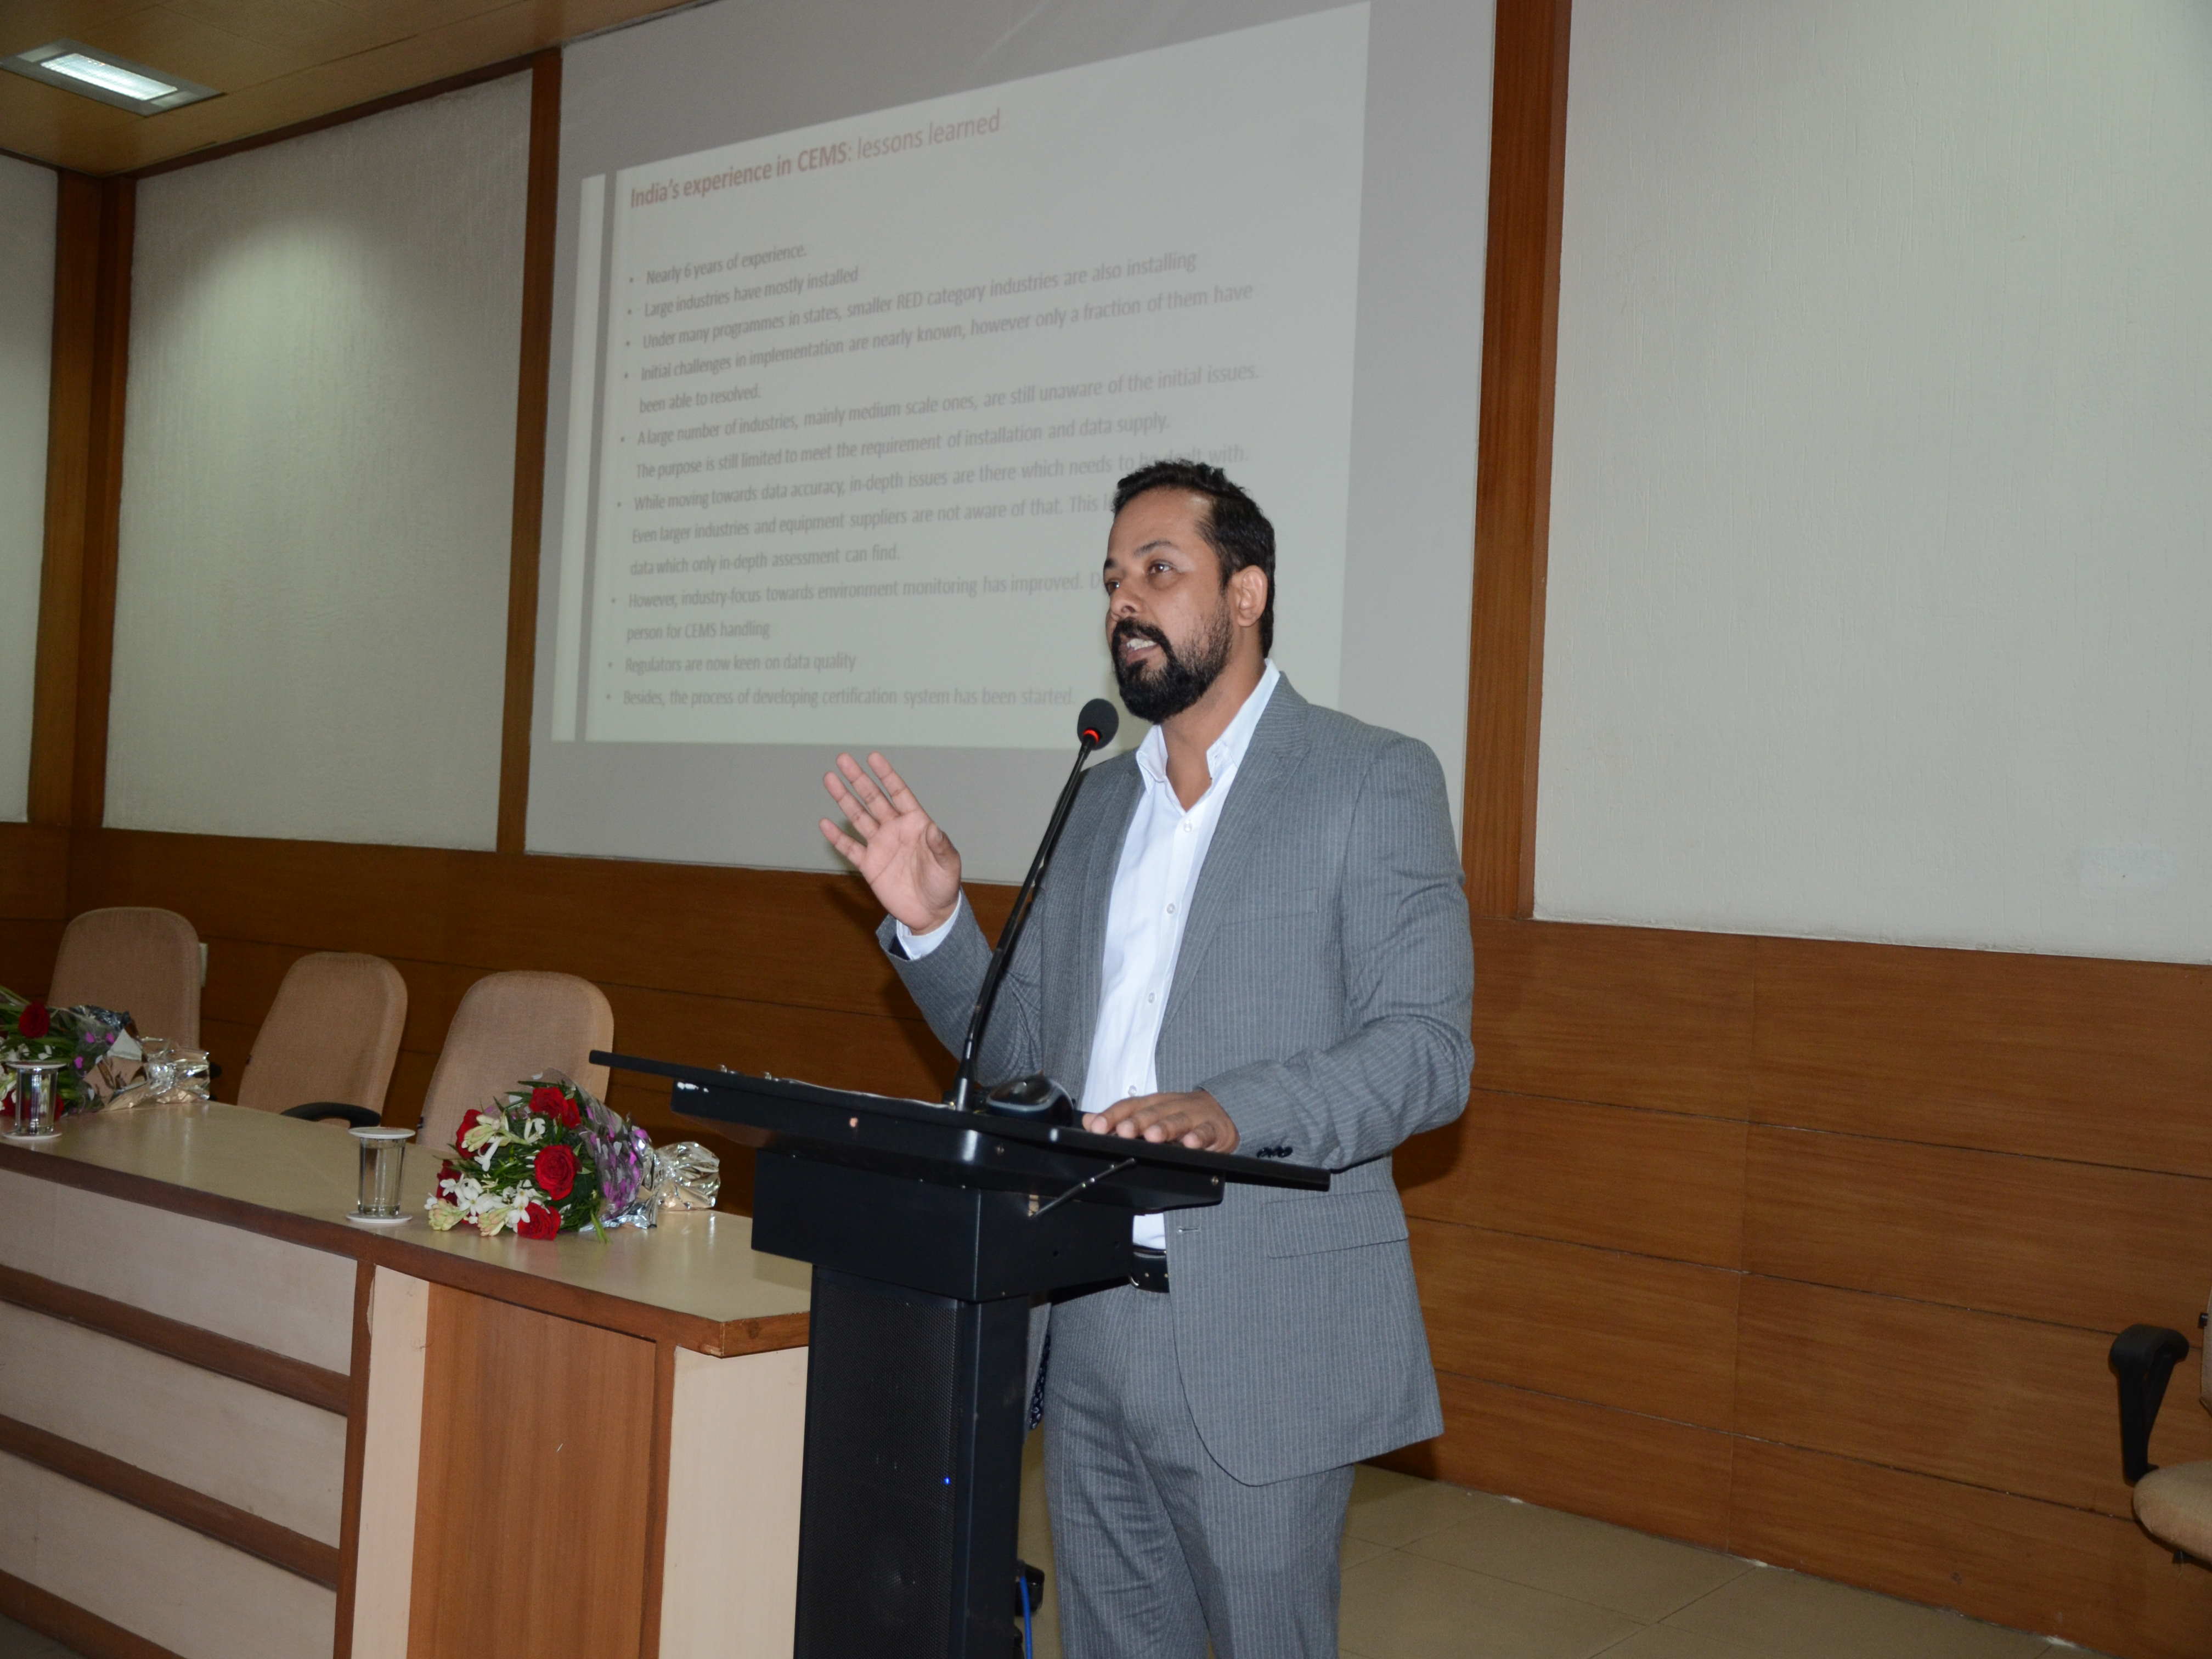 Shri Sankar Kannan, M/s SICK India Pvt. Ltd. talking on PM-CEMS technology